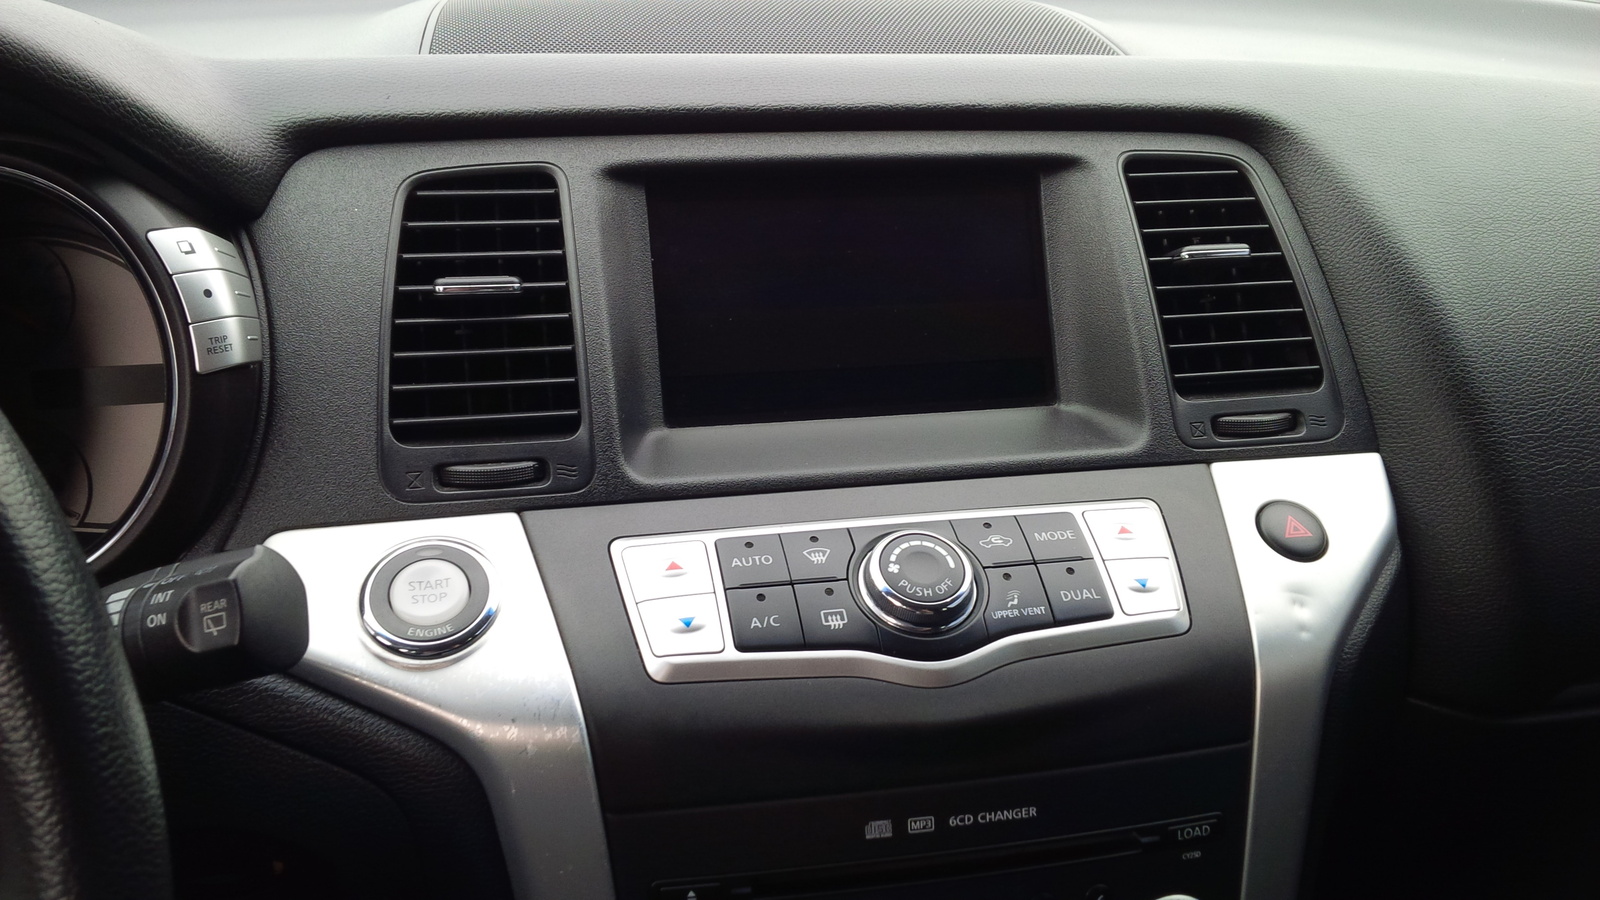 2009 Nissan murano interior dimensions #9